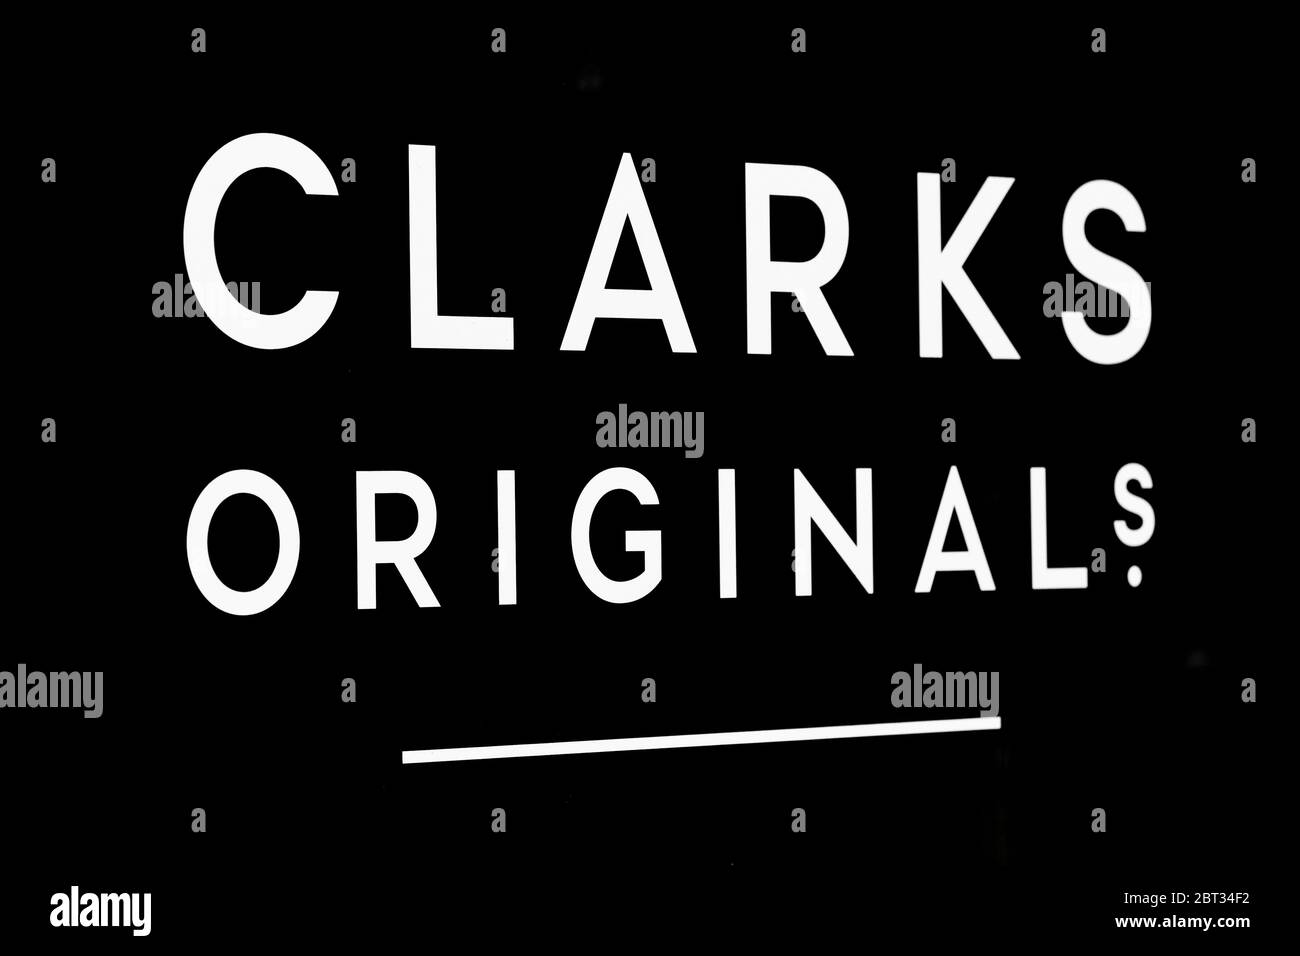 clarks originals logo